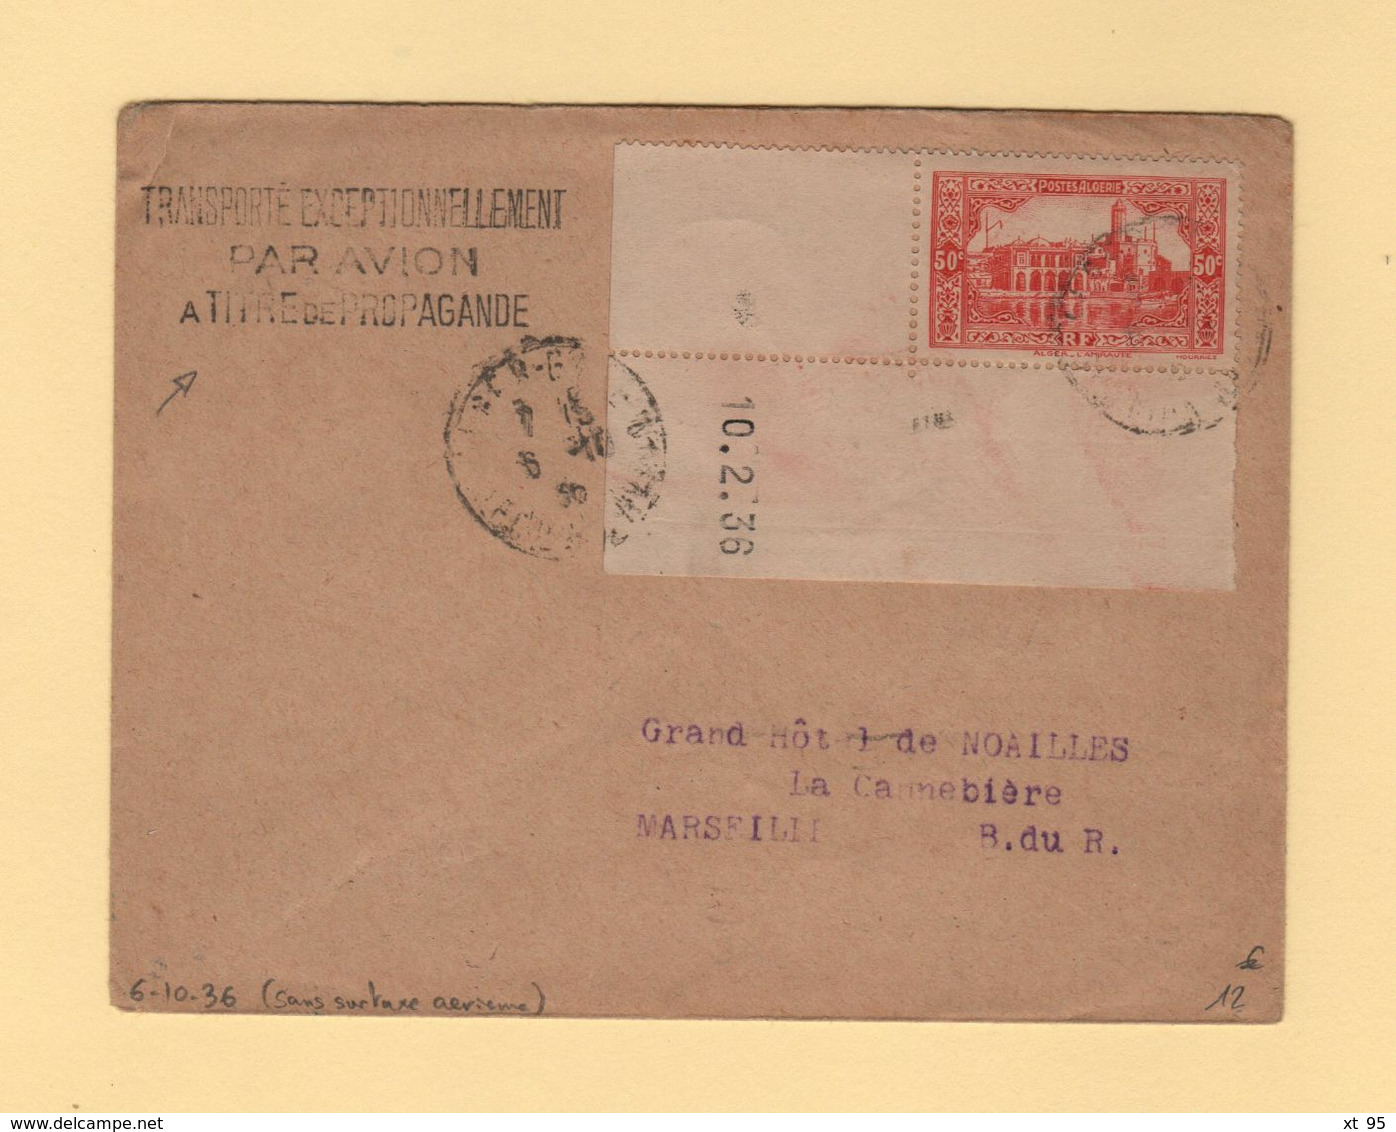 Algerie - Transporte Exceptionnellement Par Avion A Titre De Propagande - 6-10-1936 - Sans Surtaxe Aerienne - Poste Aérienne